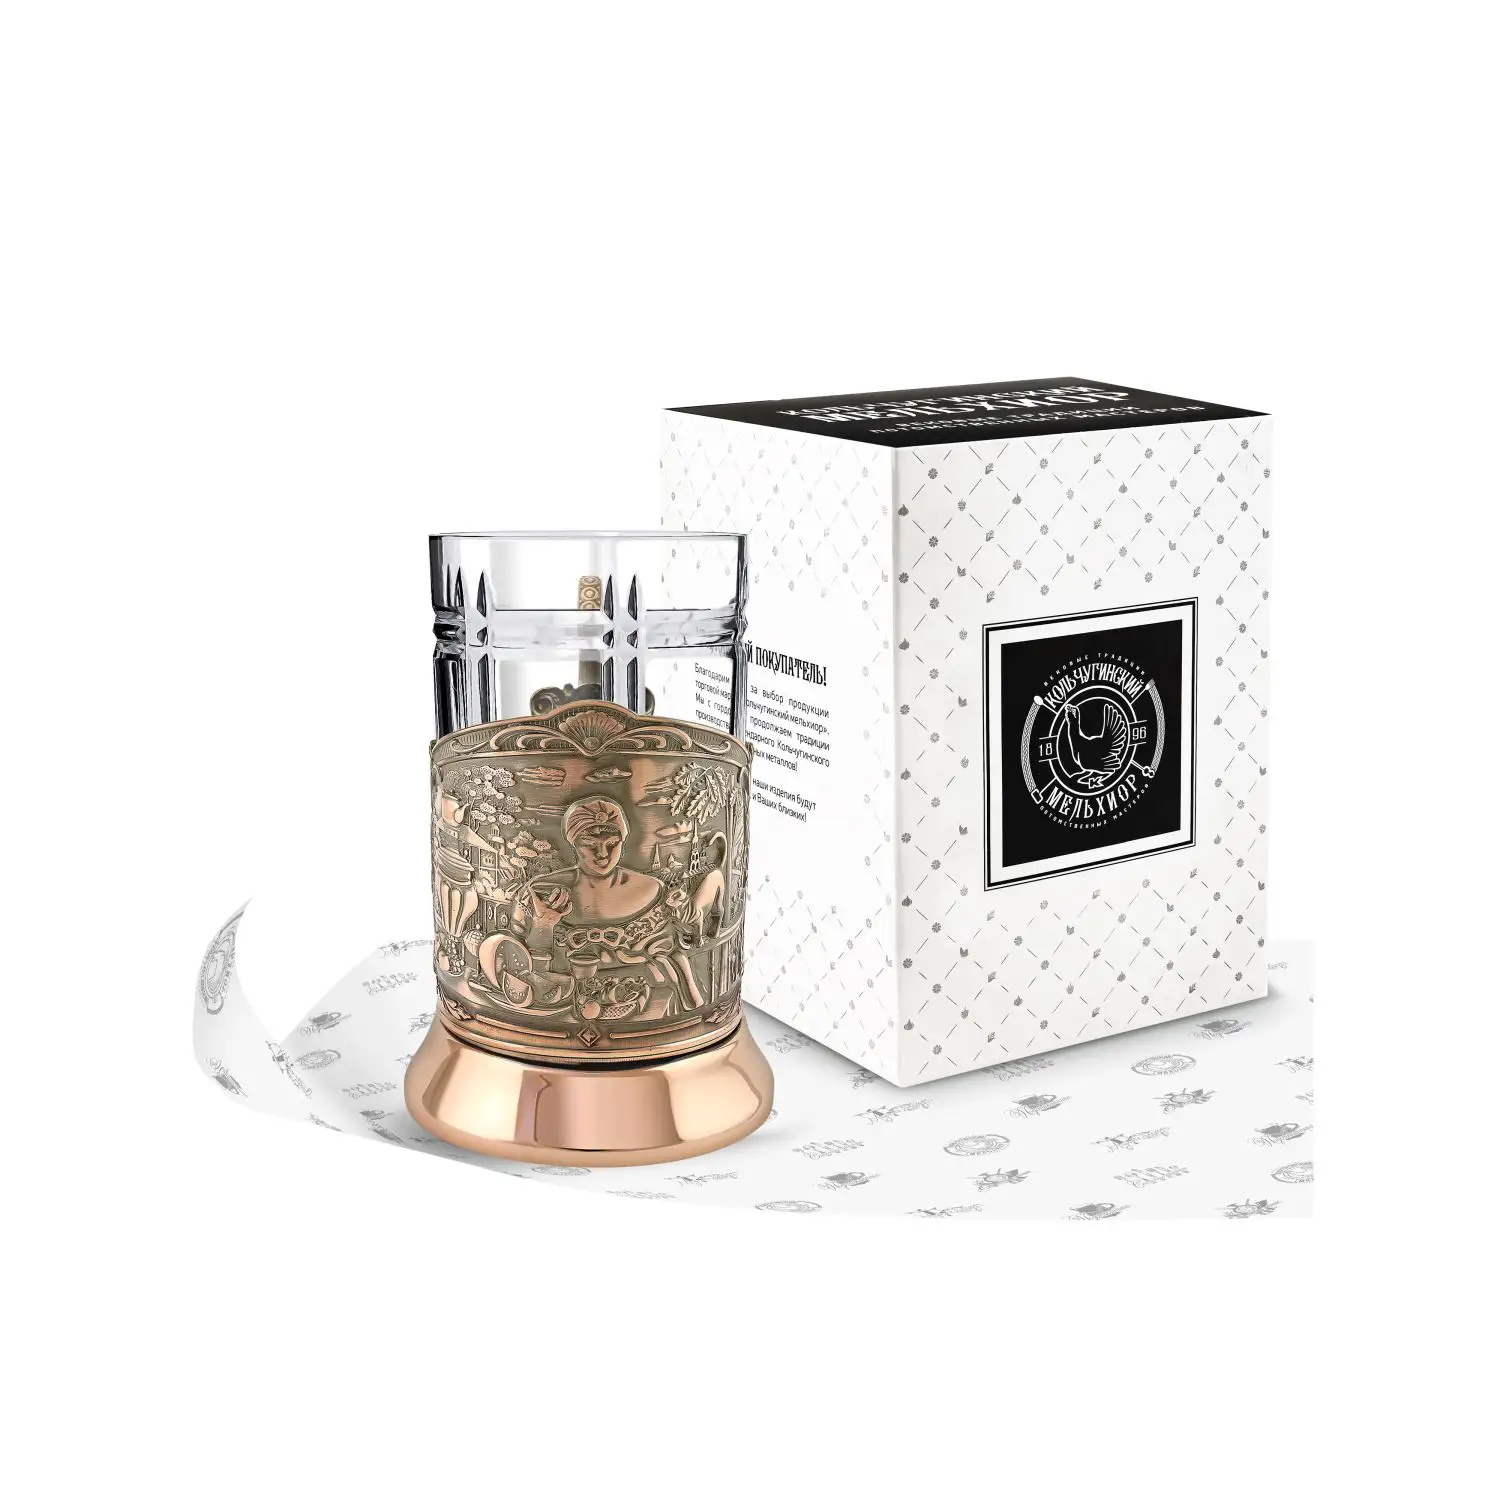 Набор для чая медный Купчиха (Триумфальная) набор д чая посеребренный купчиха триумфальная